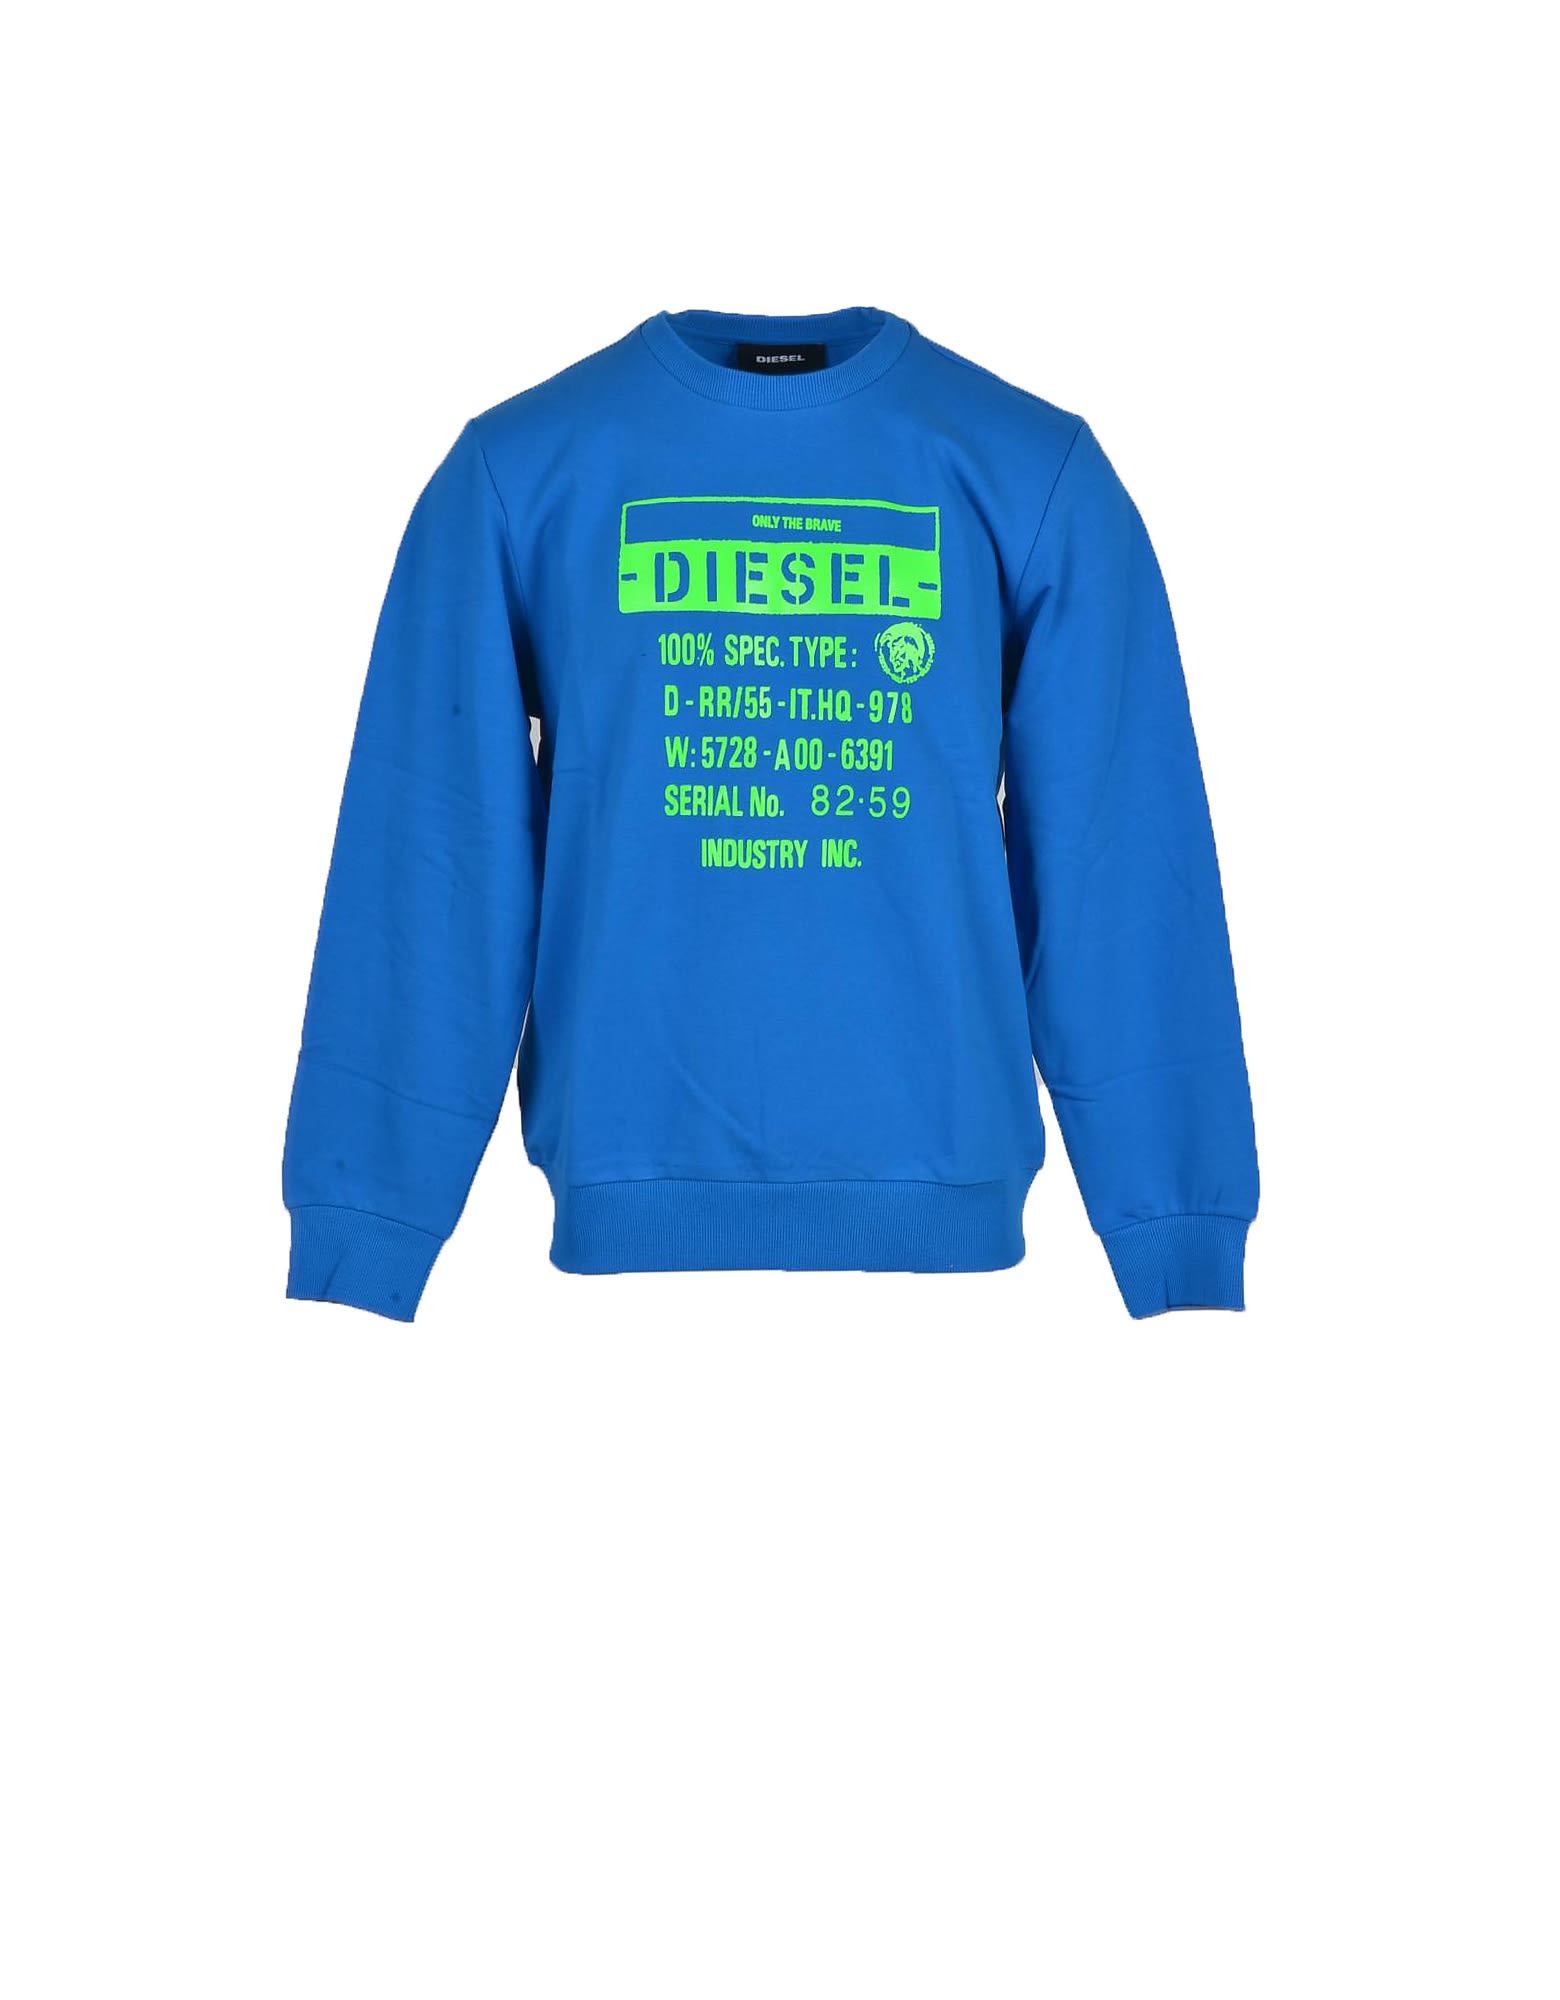 Diesel Mens Light Blue Sweatshirt